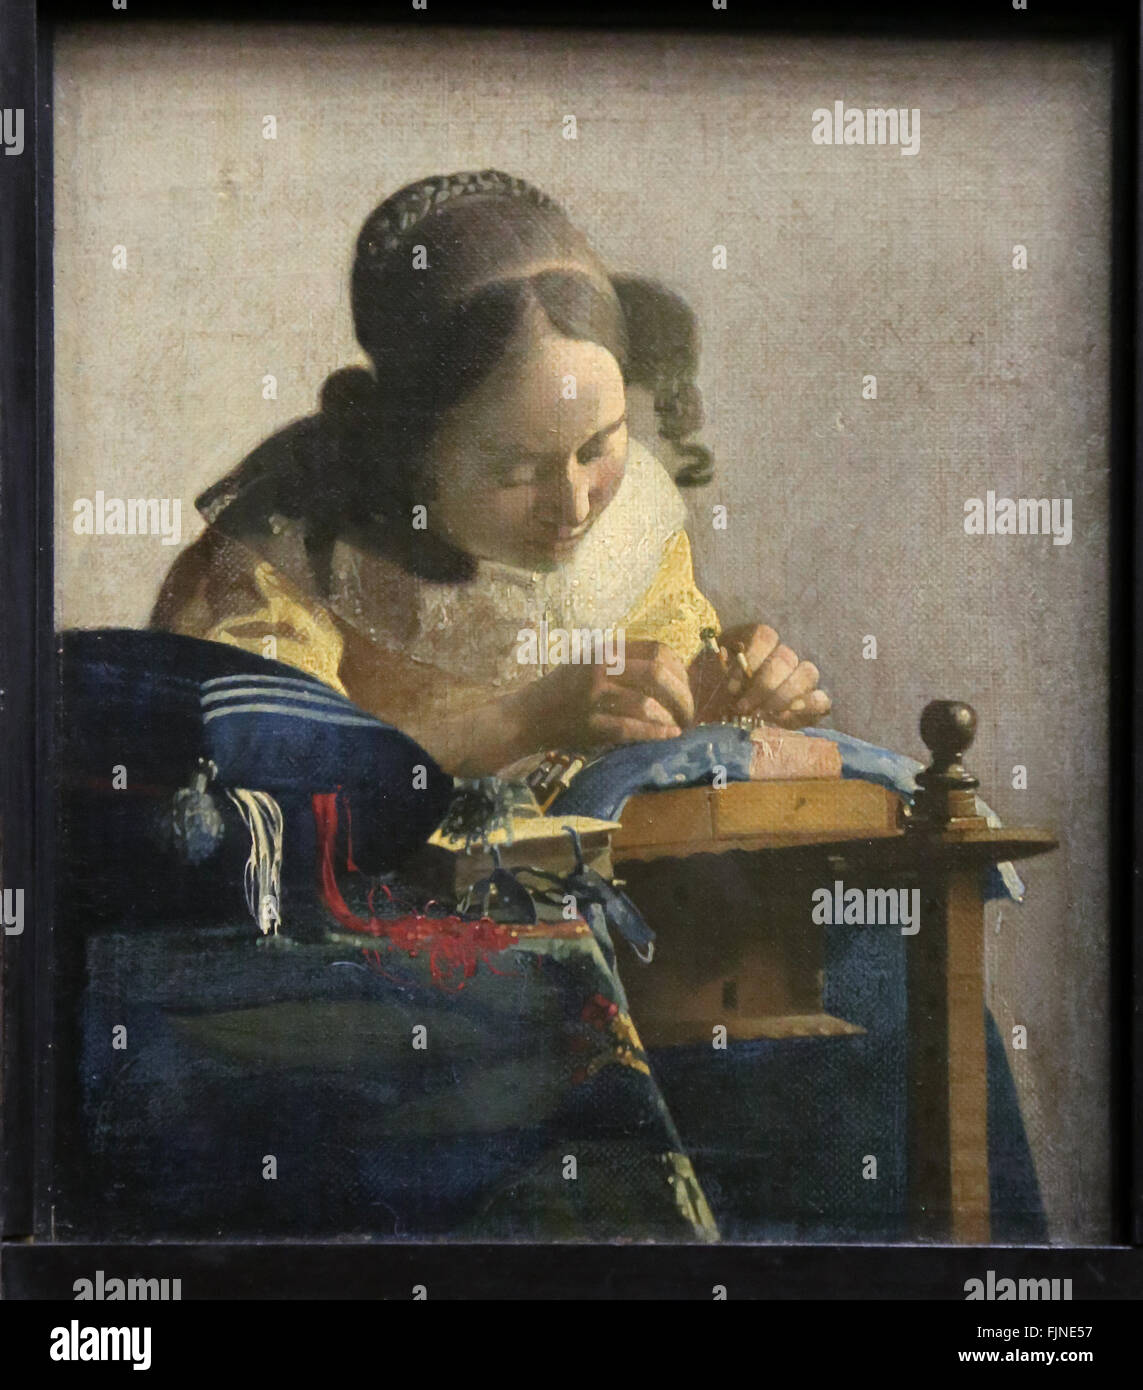 Johannes Vermeer (1632-1670). Niederländischer Maler. Die Spitzenklöpplerin, 1669-1670. Louvre-Museum. Paris. Frankreich. Stockfoto